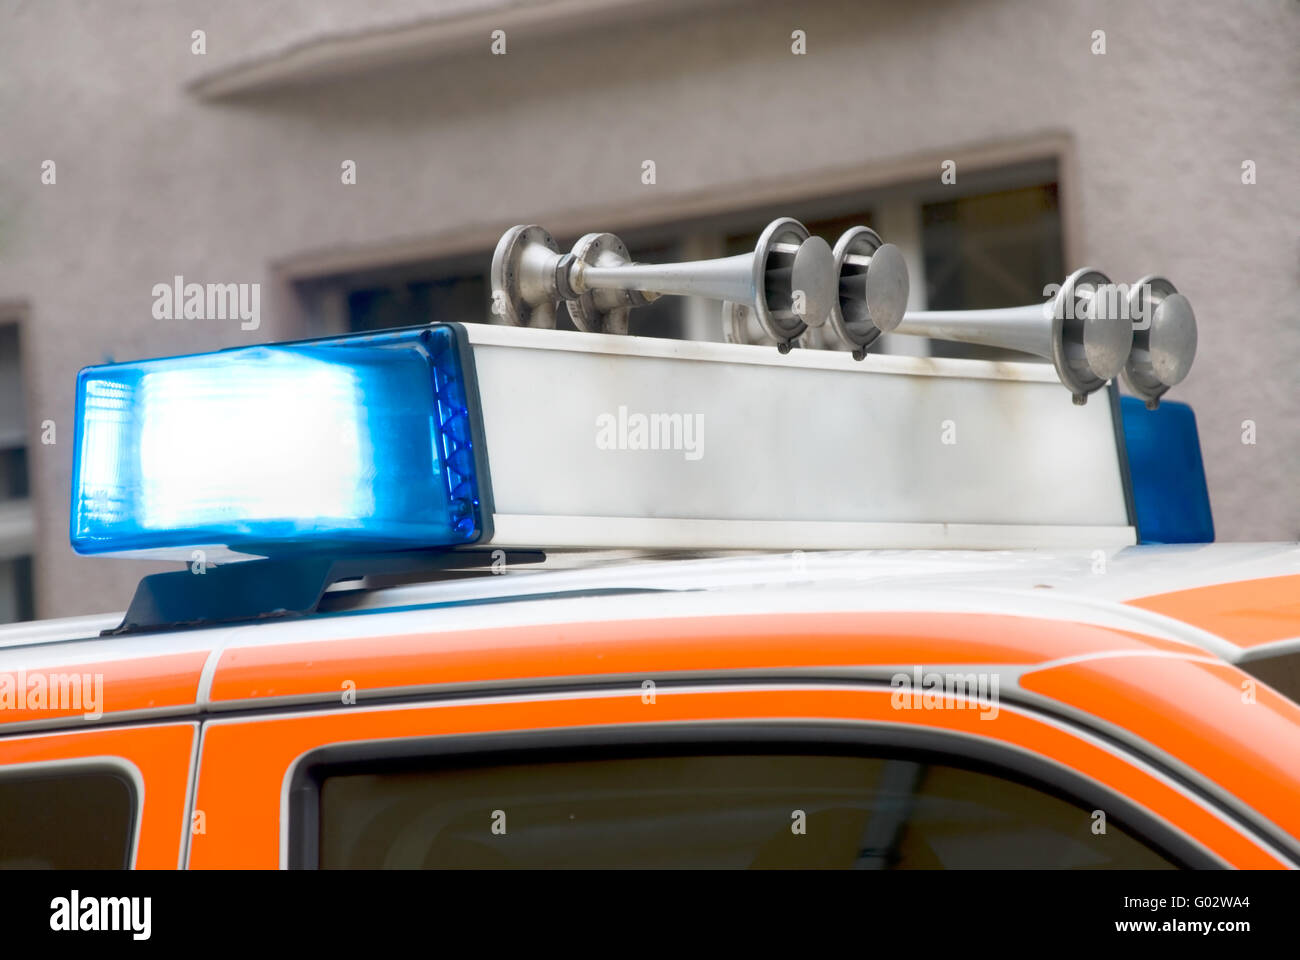 Dach von einem deutschen Notfall Auto mit Blaulicht Stockfoto